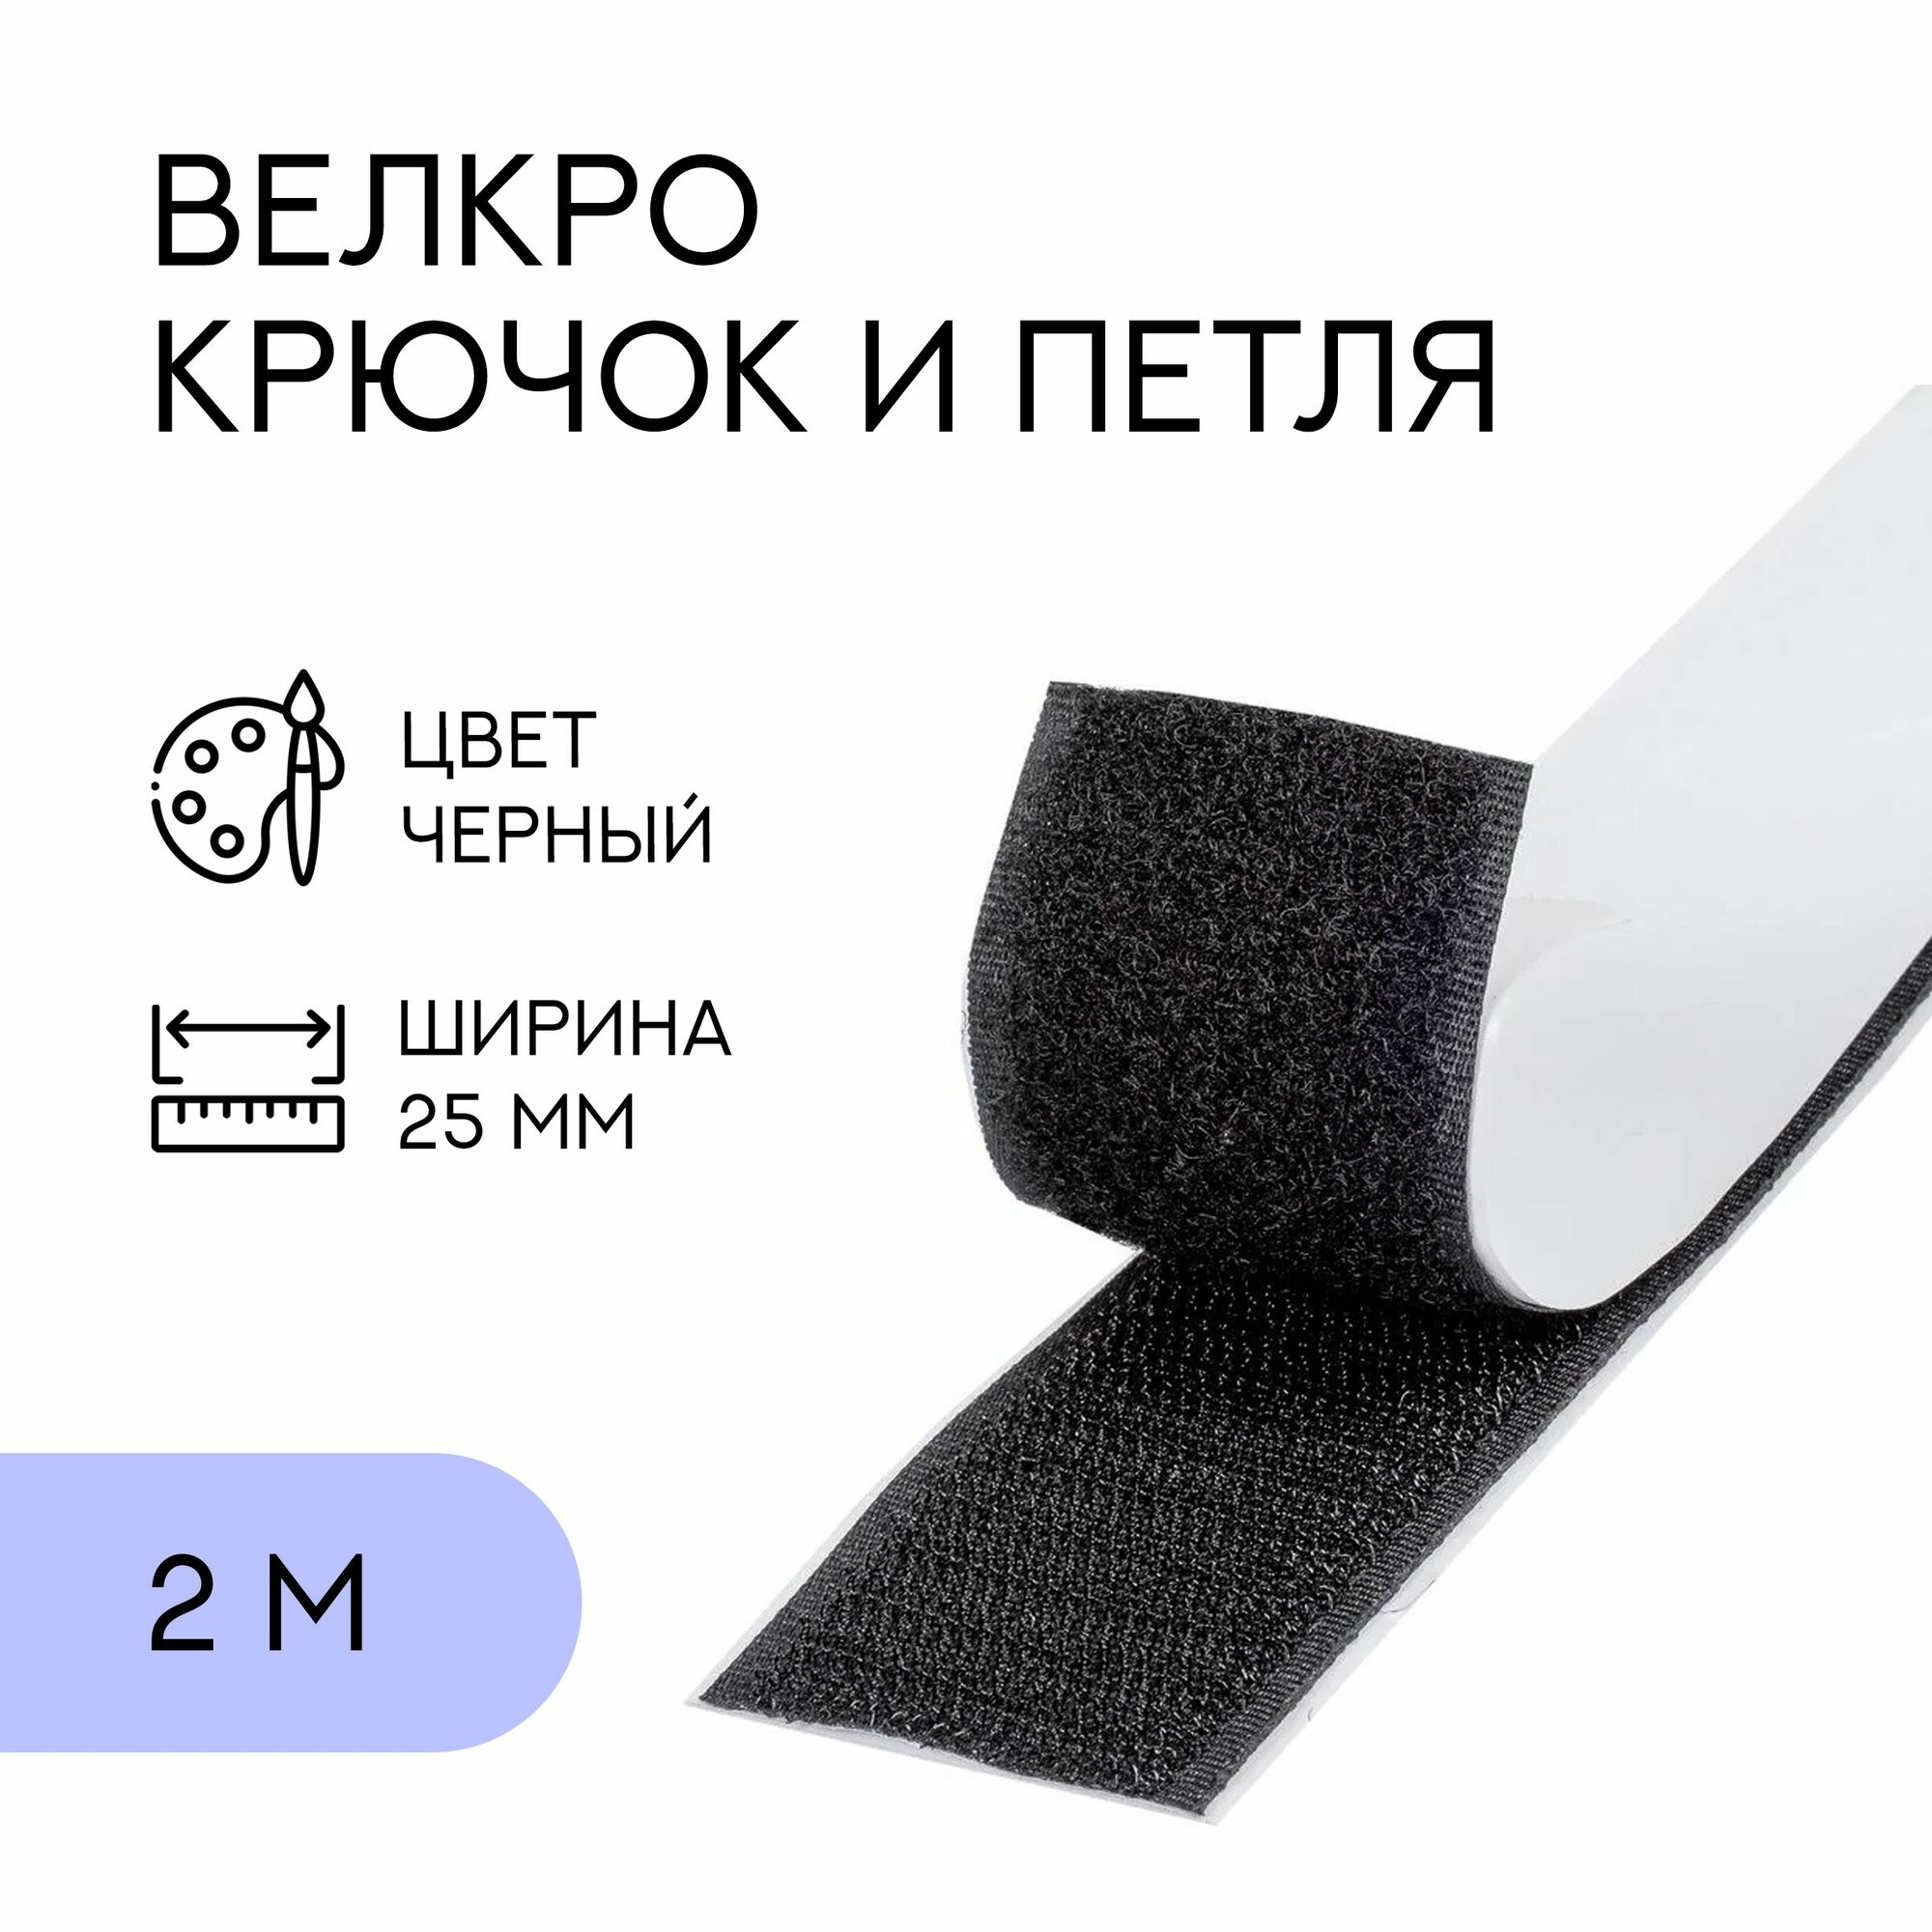 Велкро комплект (петля и крючок) с липким слоем / лента контактная липучка 25 мм черный 2 м